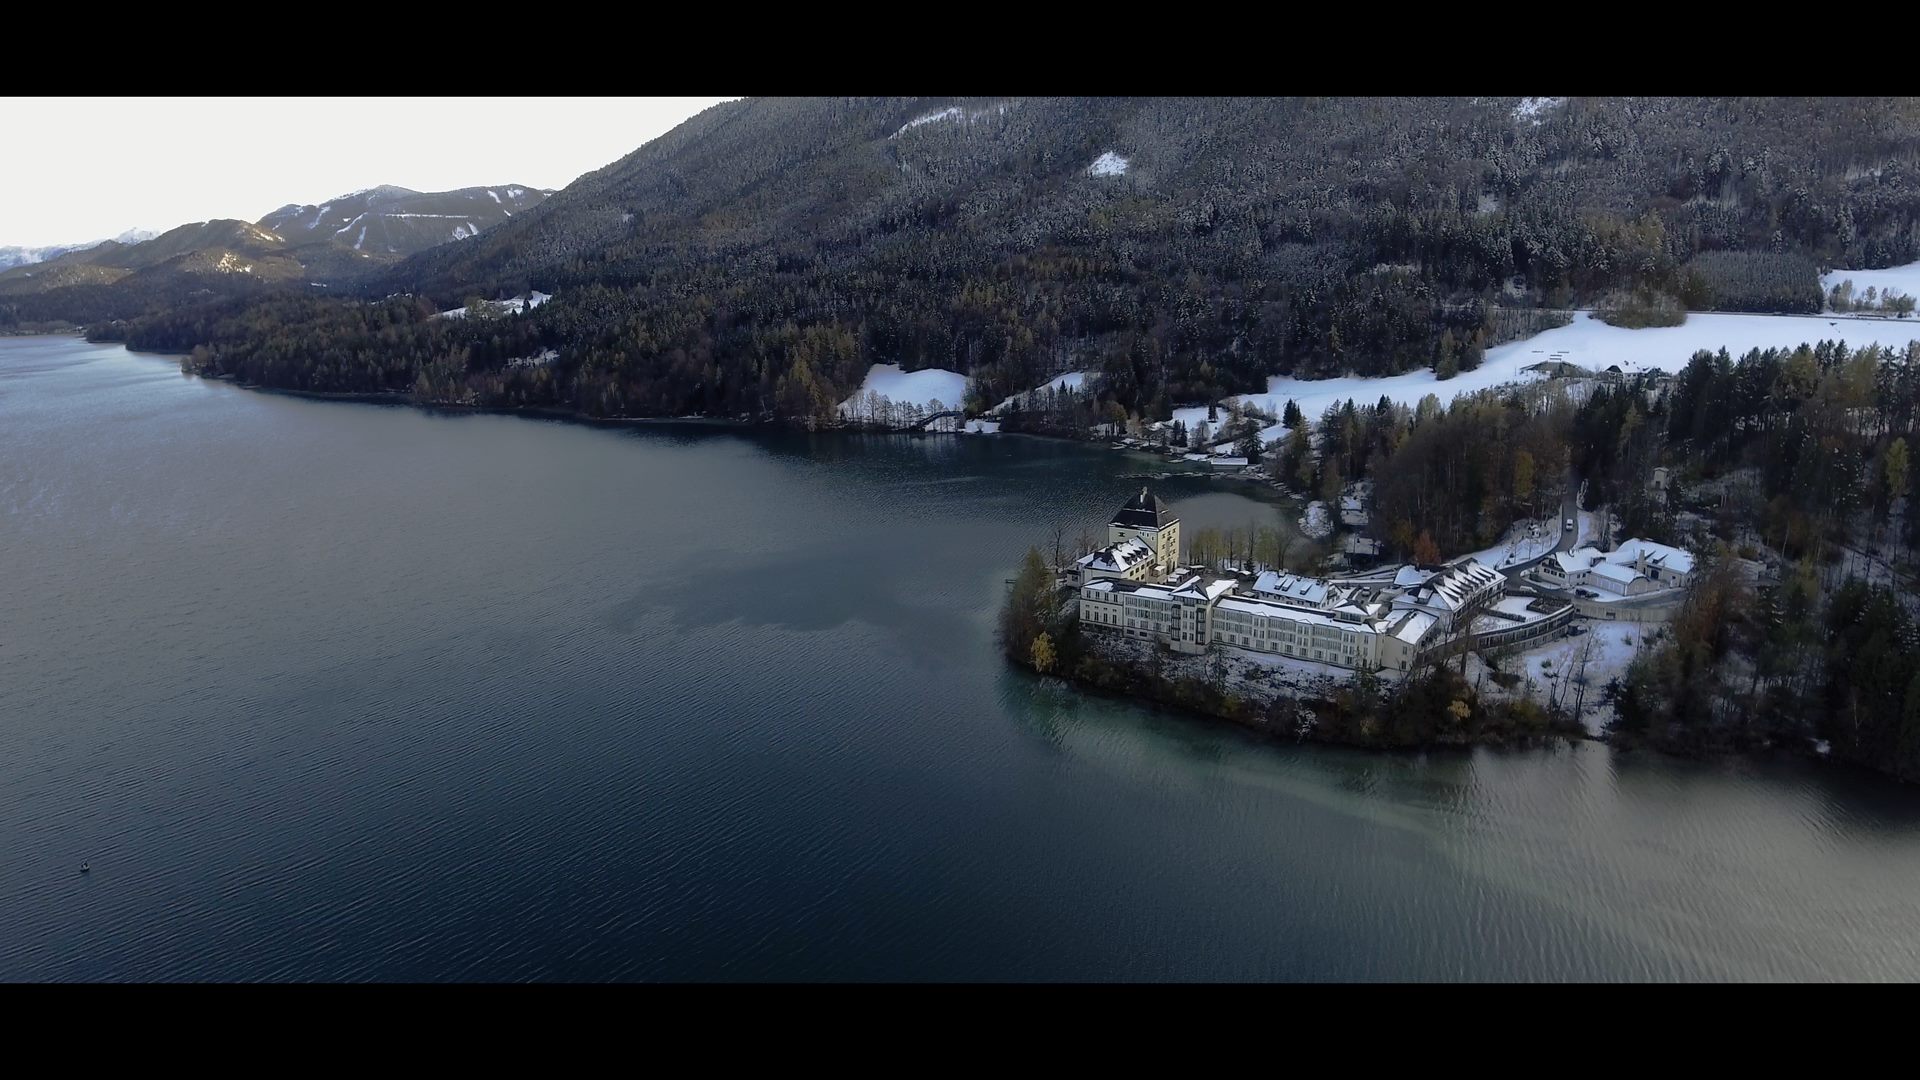 Eine Luftaufnahme eines Sees mit einem Sheraton Hotel darauf.